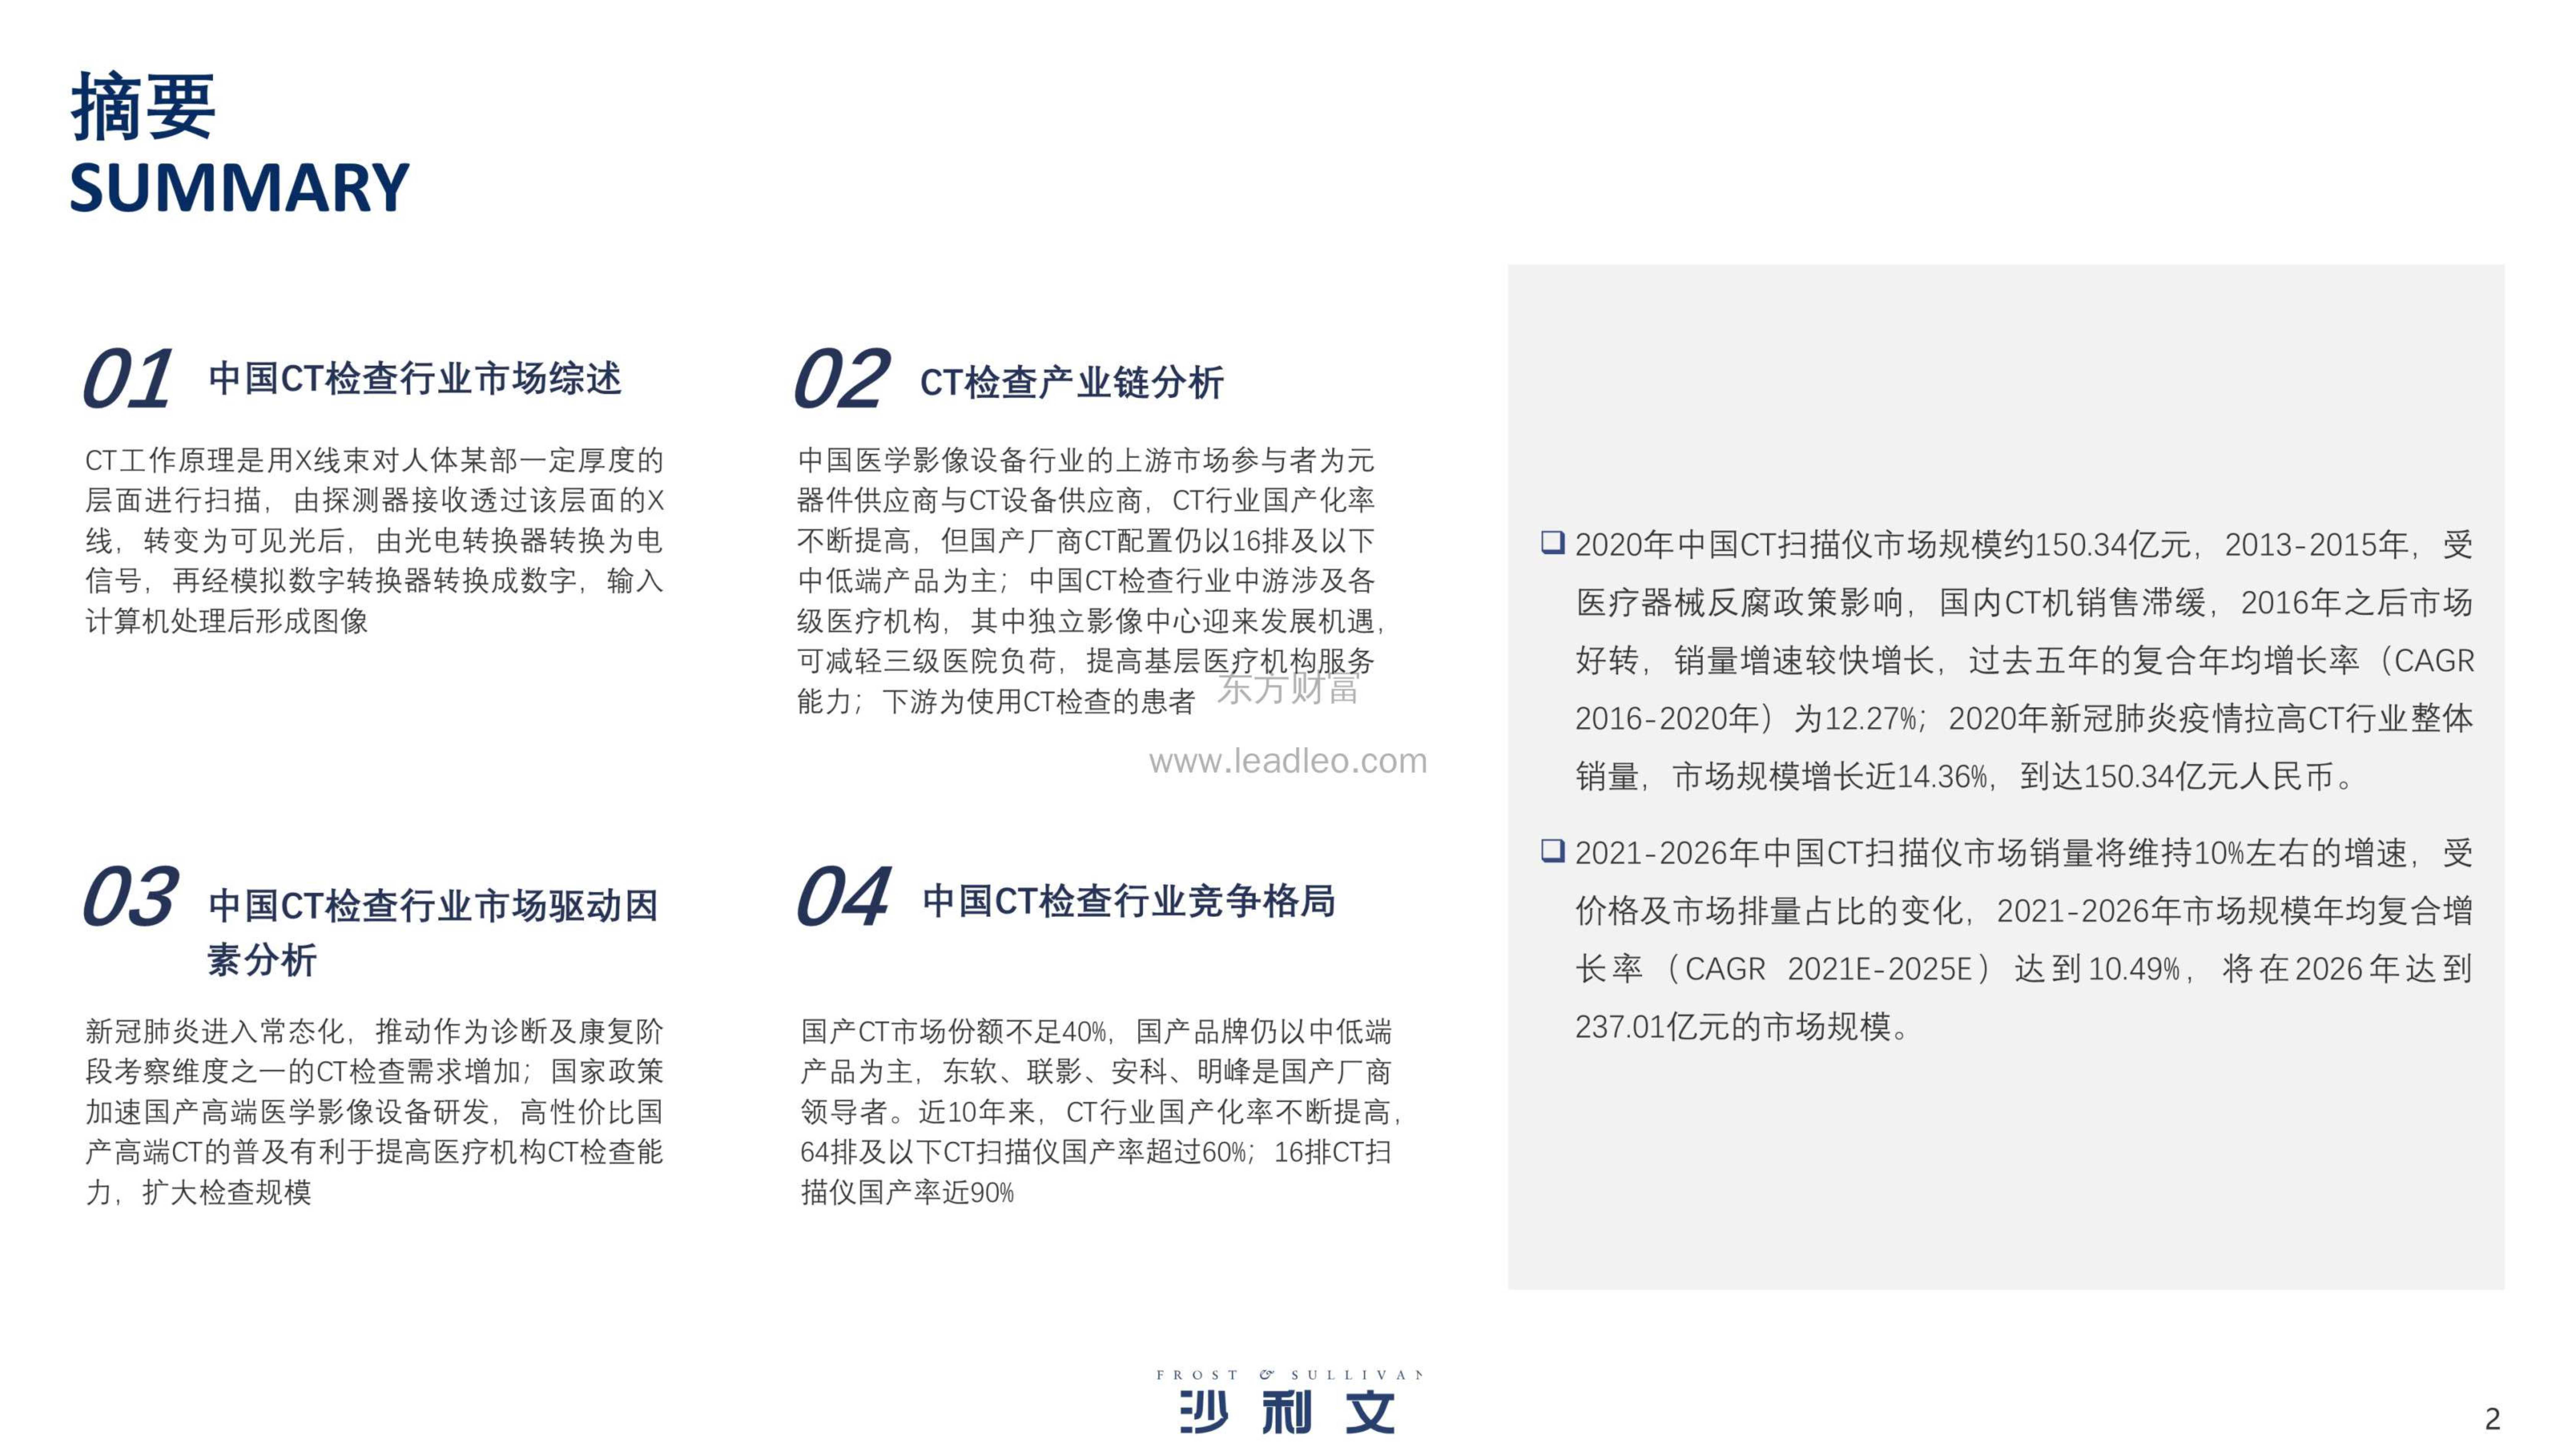 沙利文-2021年中国CT检查设备行业研究-2021.11-36页